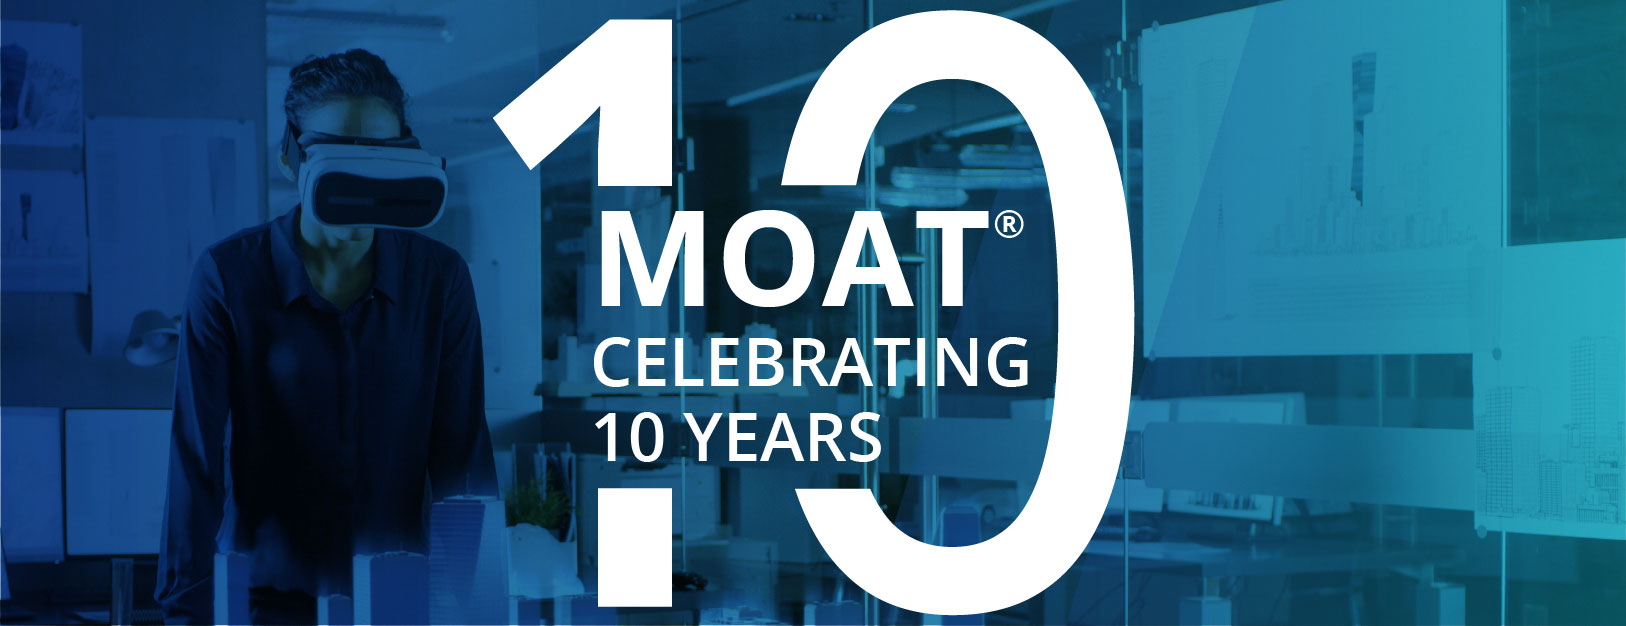 MOAT Celebrating 10 Years